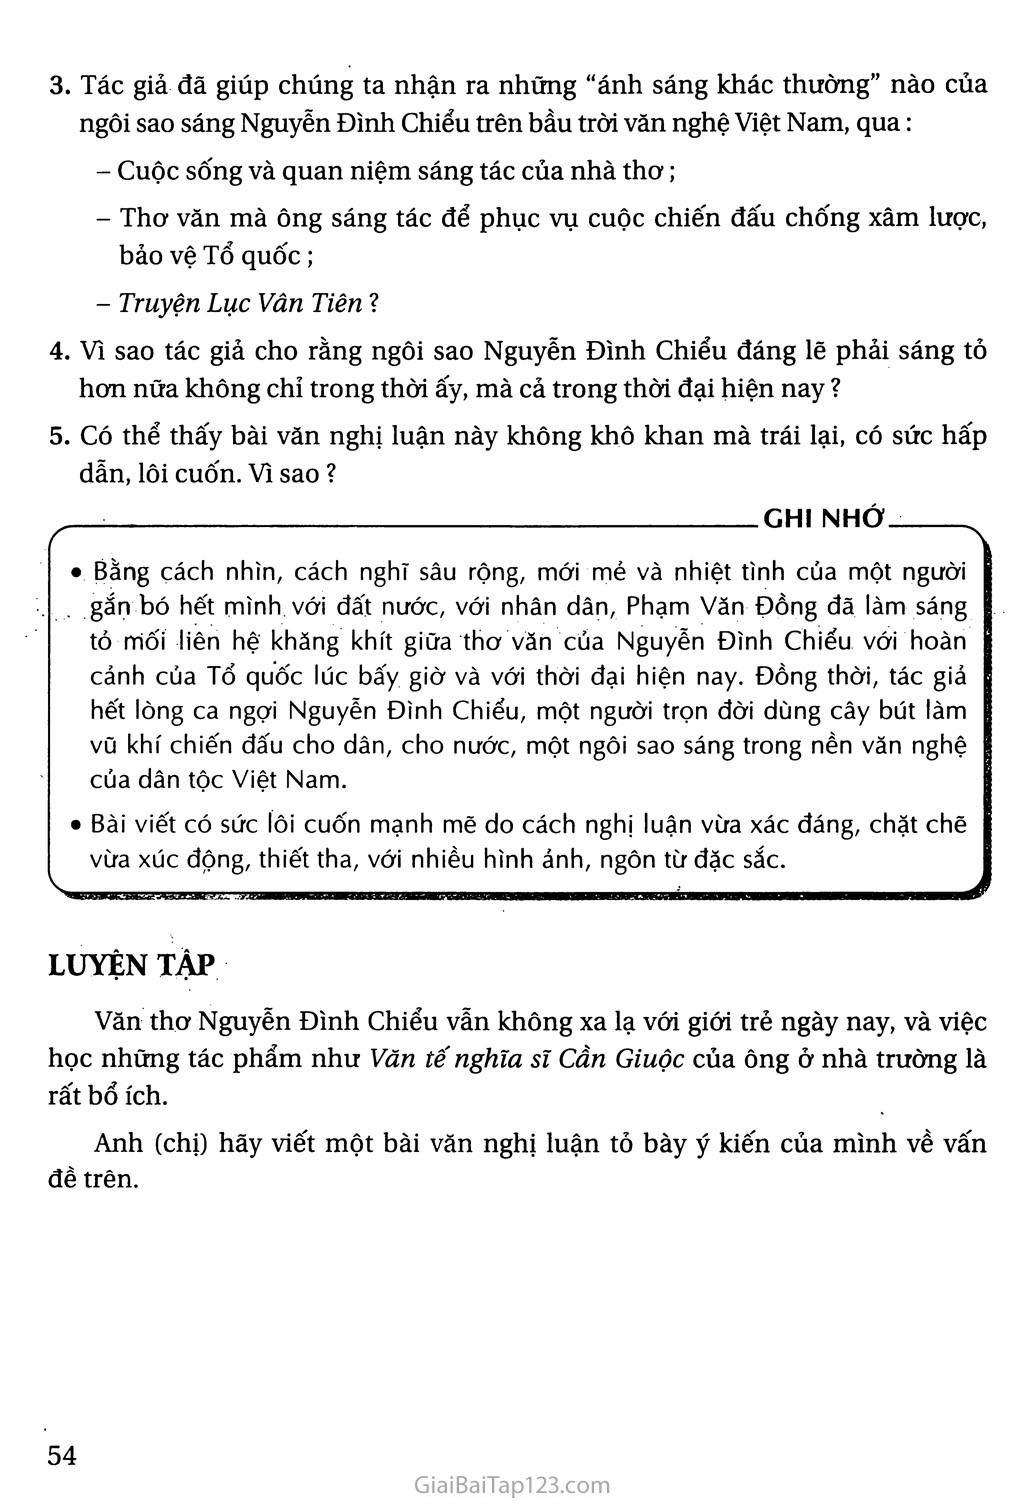 Nguyễn Đình Chiểu, ngôi sao sáng trong văn nghệ của dân tộc trang 8